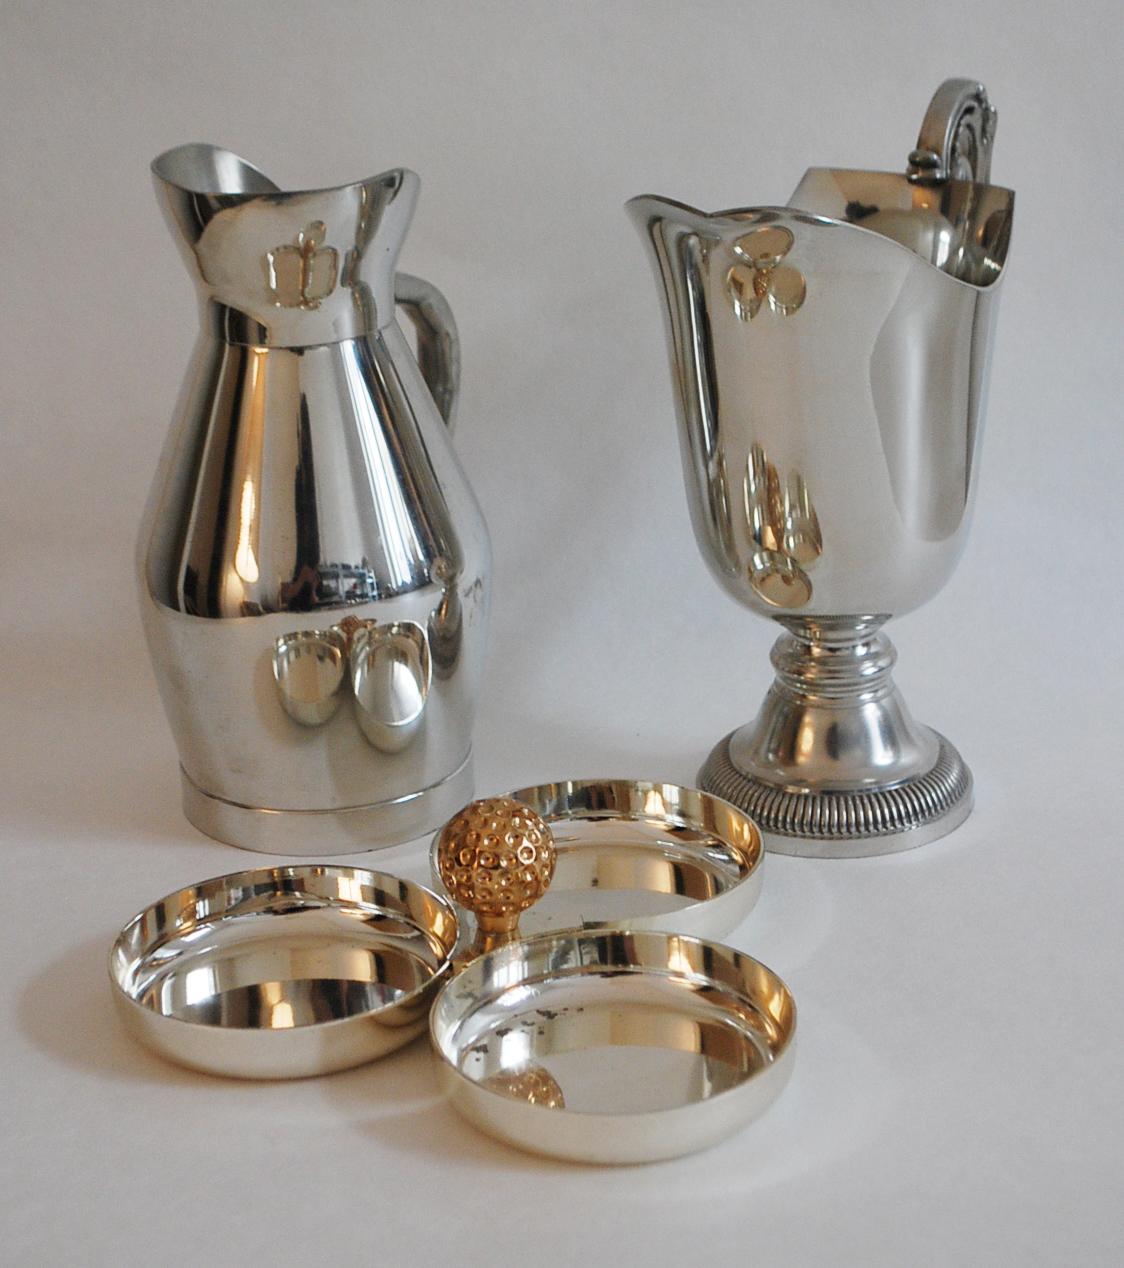 Lot comprenant deux pichets l'un en étain, l'autre en métal argenté et un présentoir en métal argenté et doré.